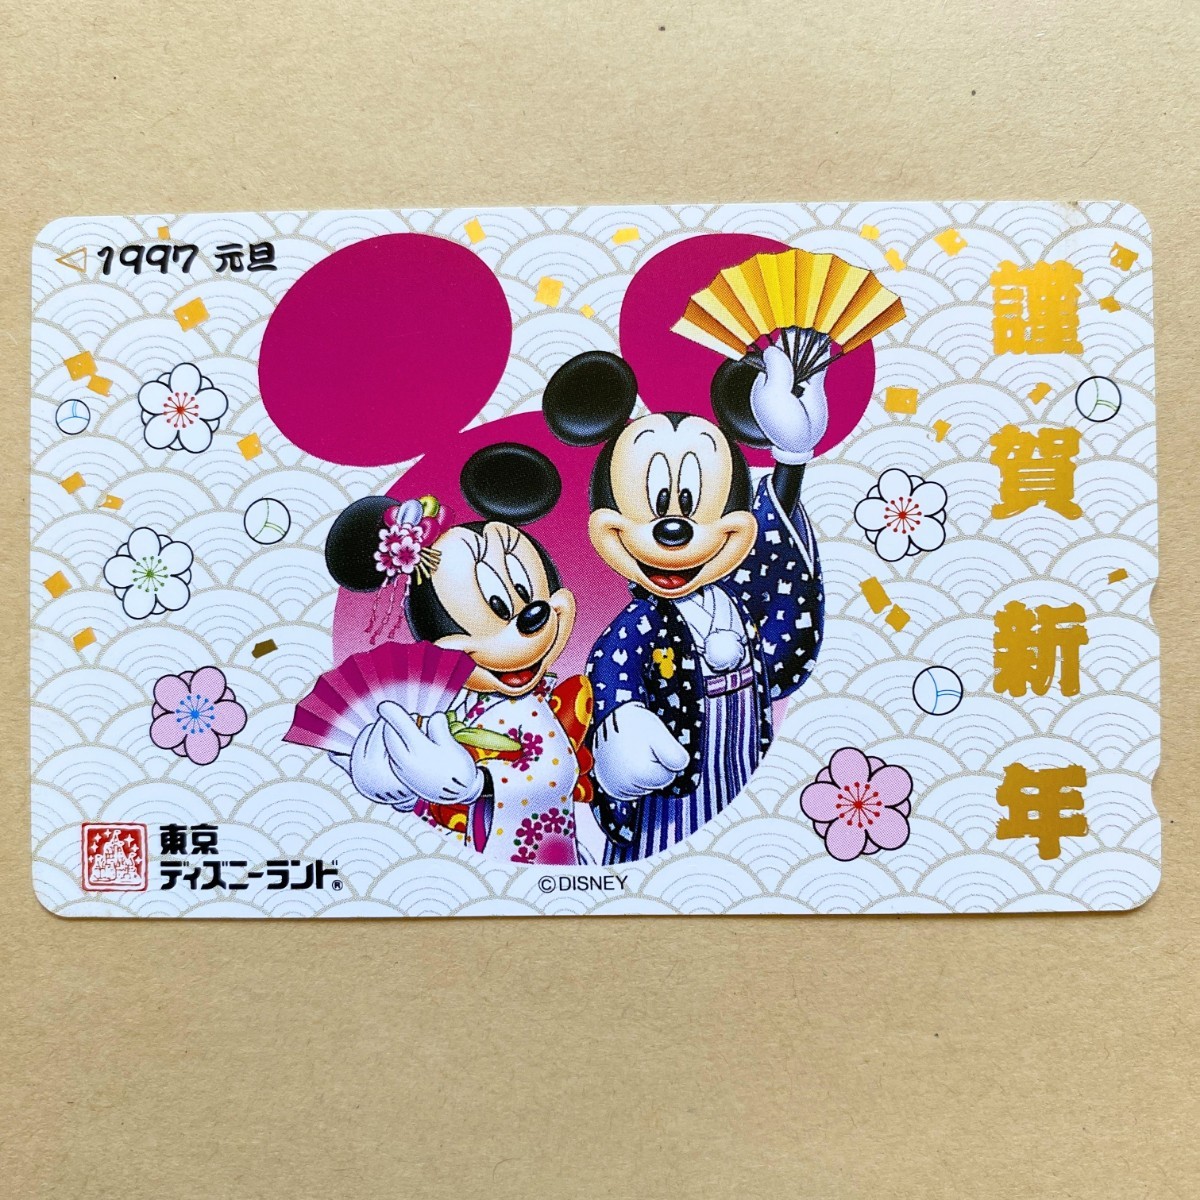 [ не использовался ] телефонная карточка .. новый год 1997 Mickey Mouse Tokyo Disney Land 